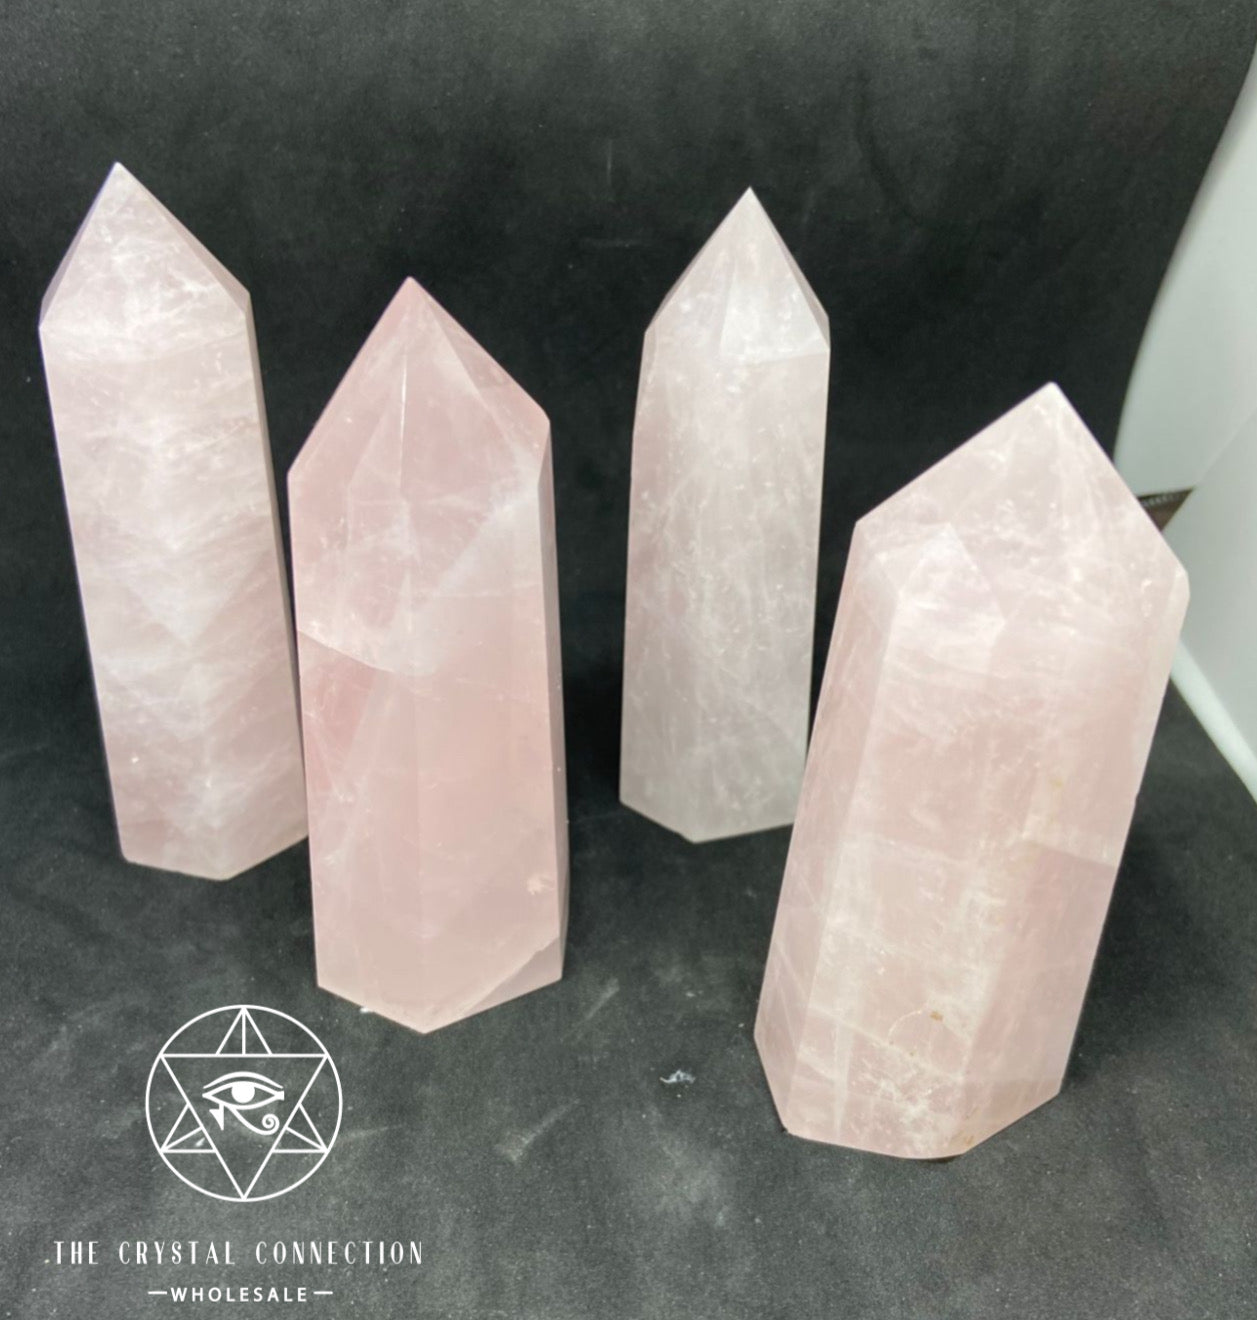 Rose quartz towers